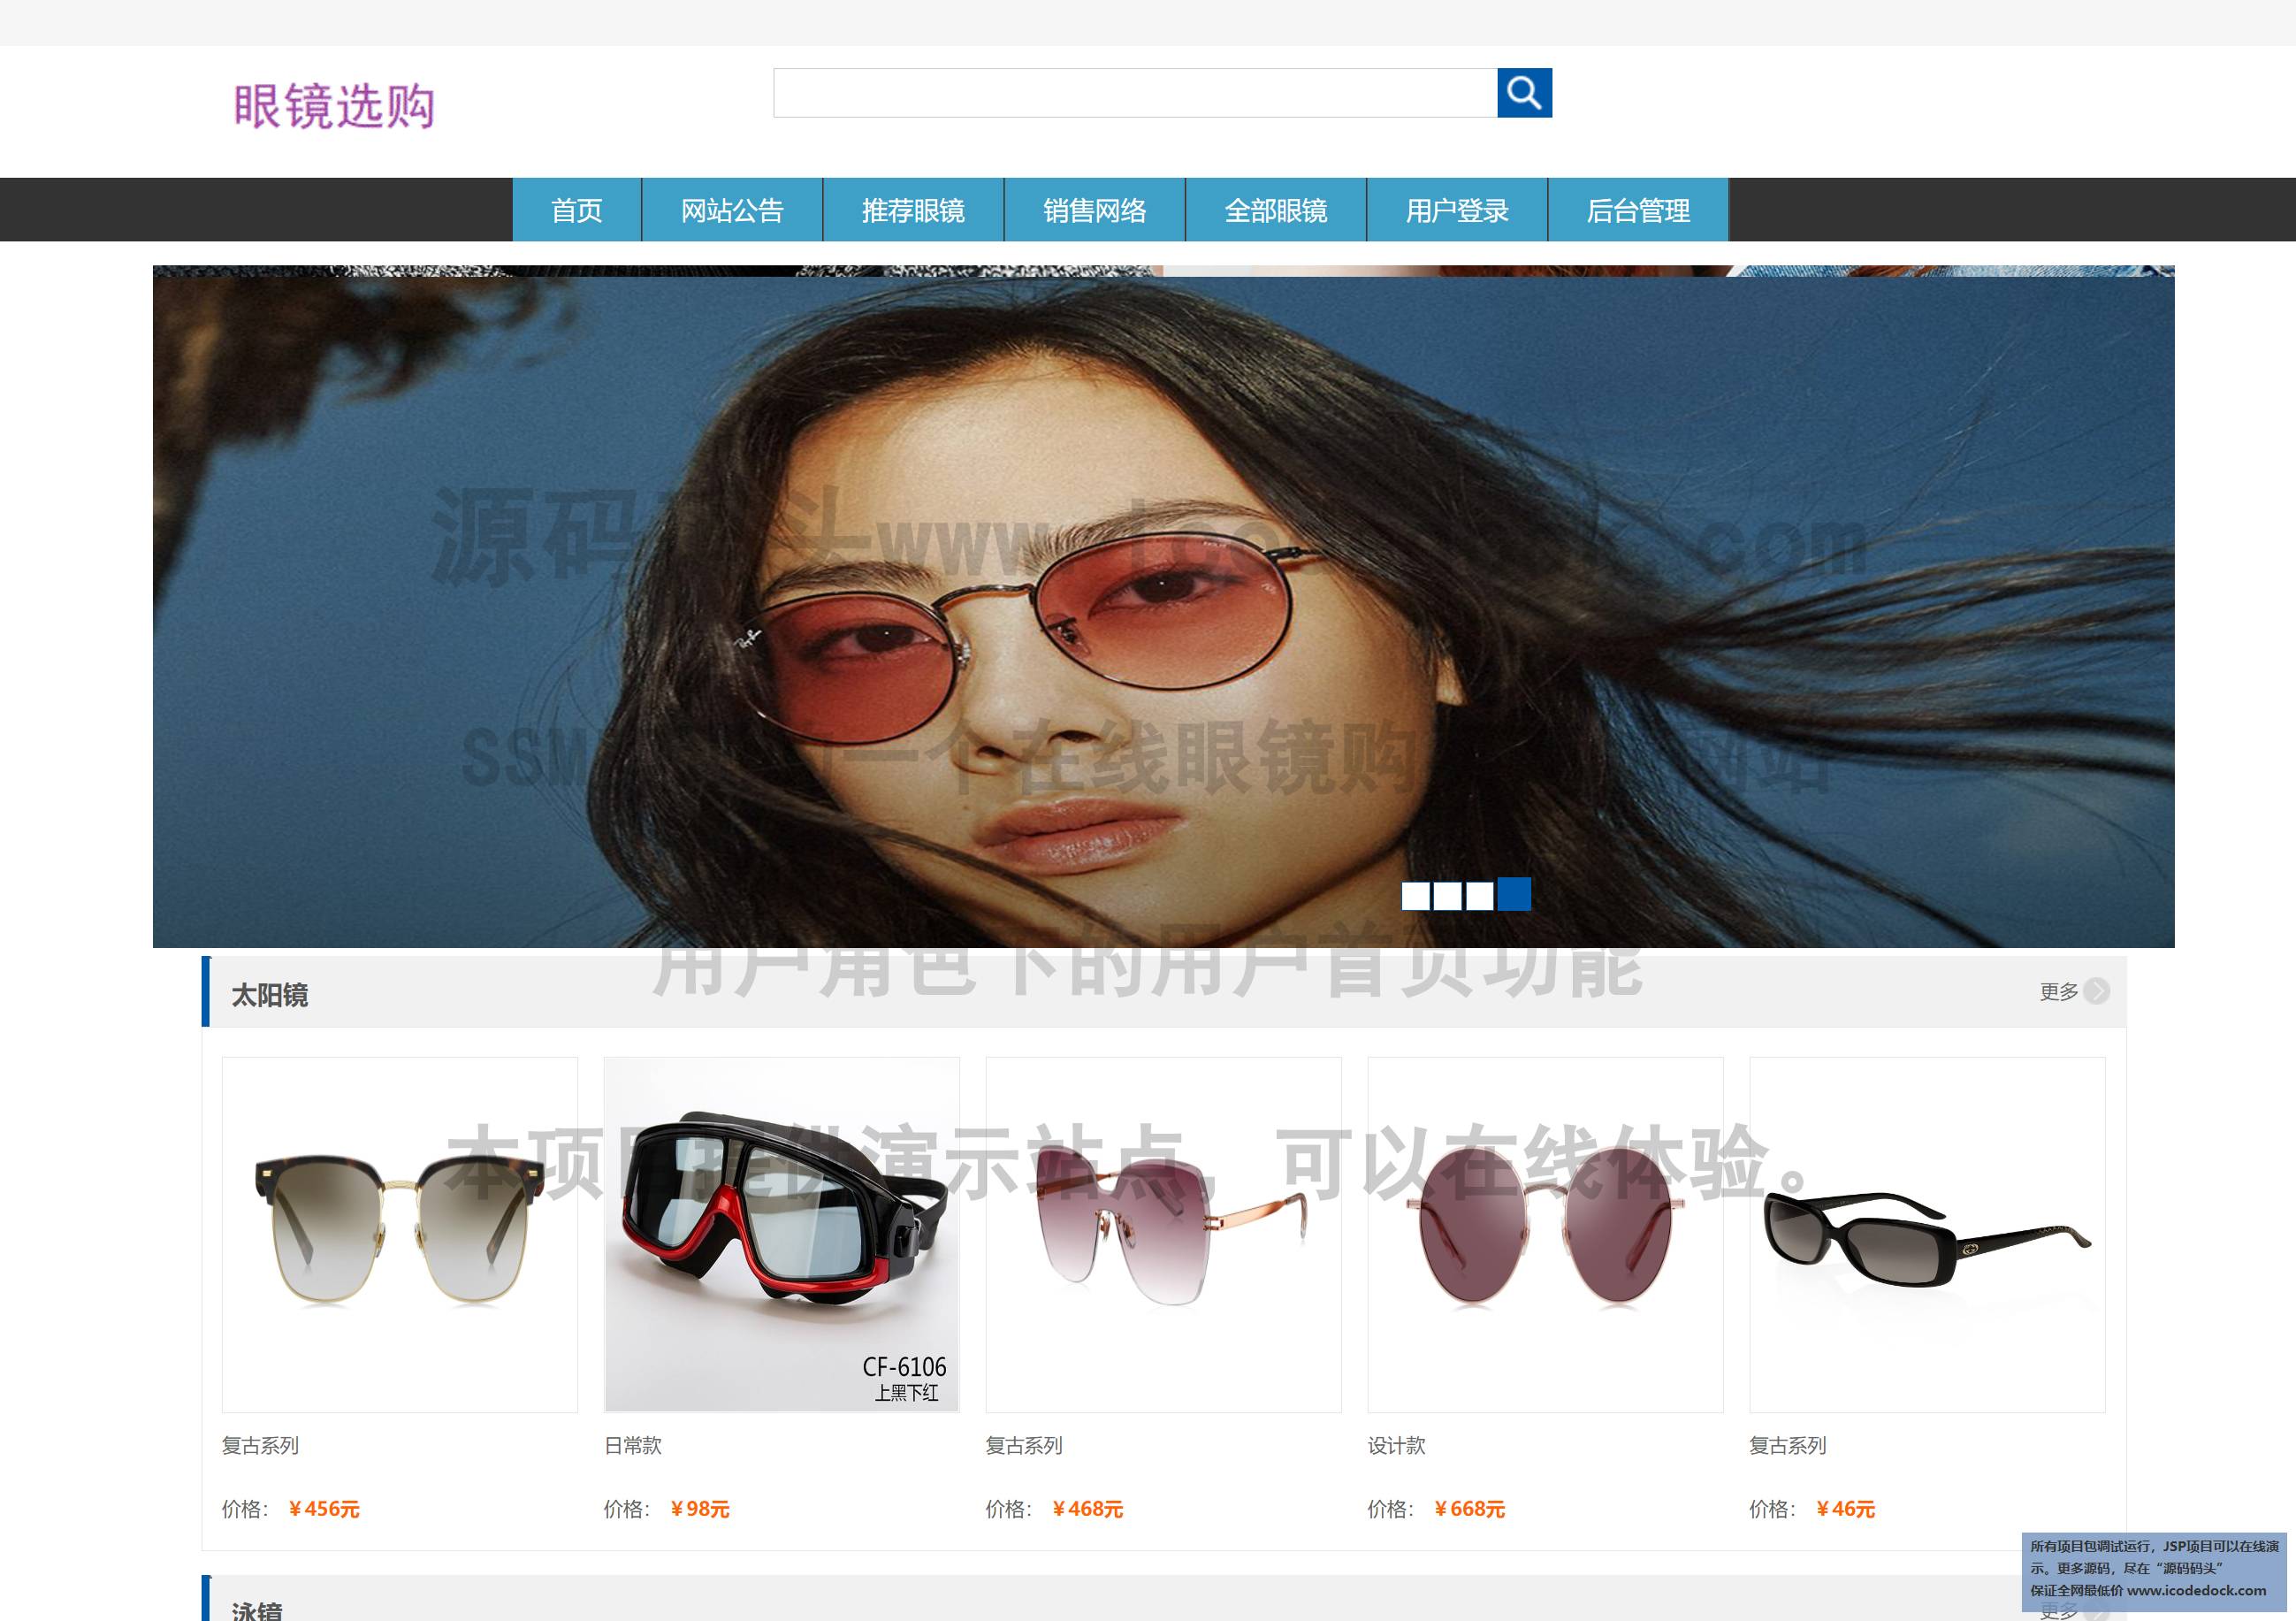 源码码头-SSM实现的一个在线眼镜购买商城网站-用户角色-用户首页